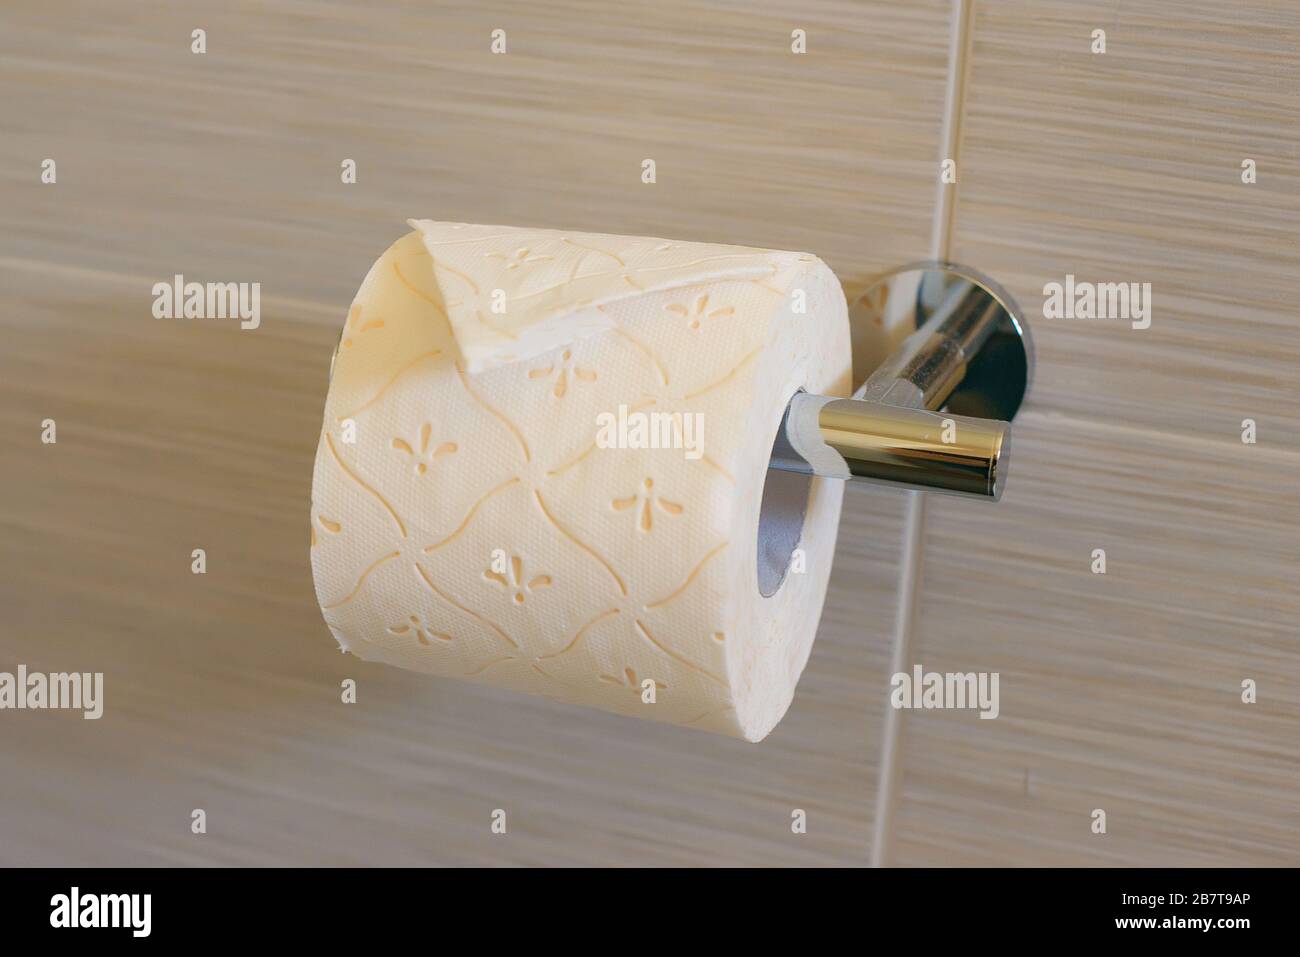 Pliage pour papier toilette